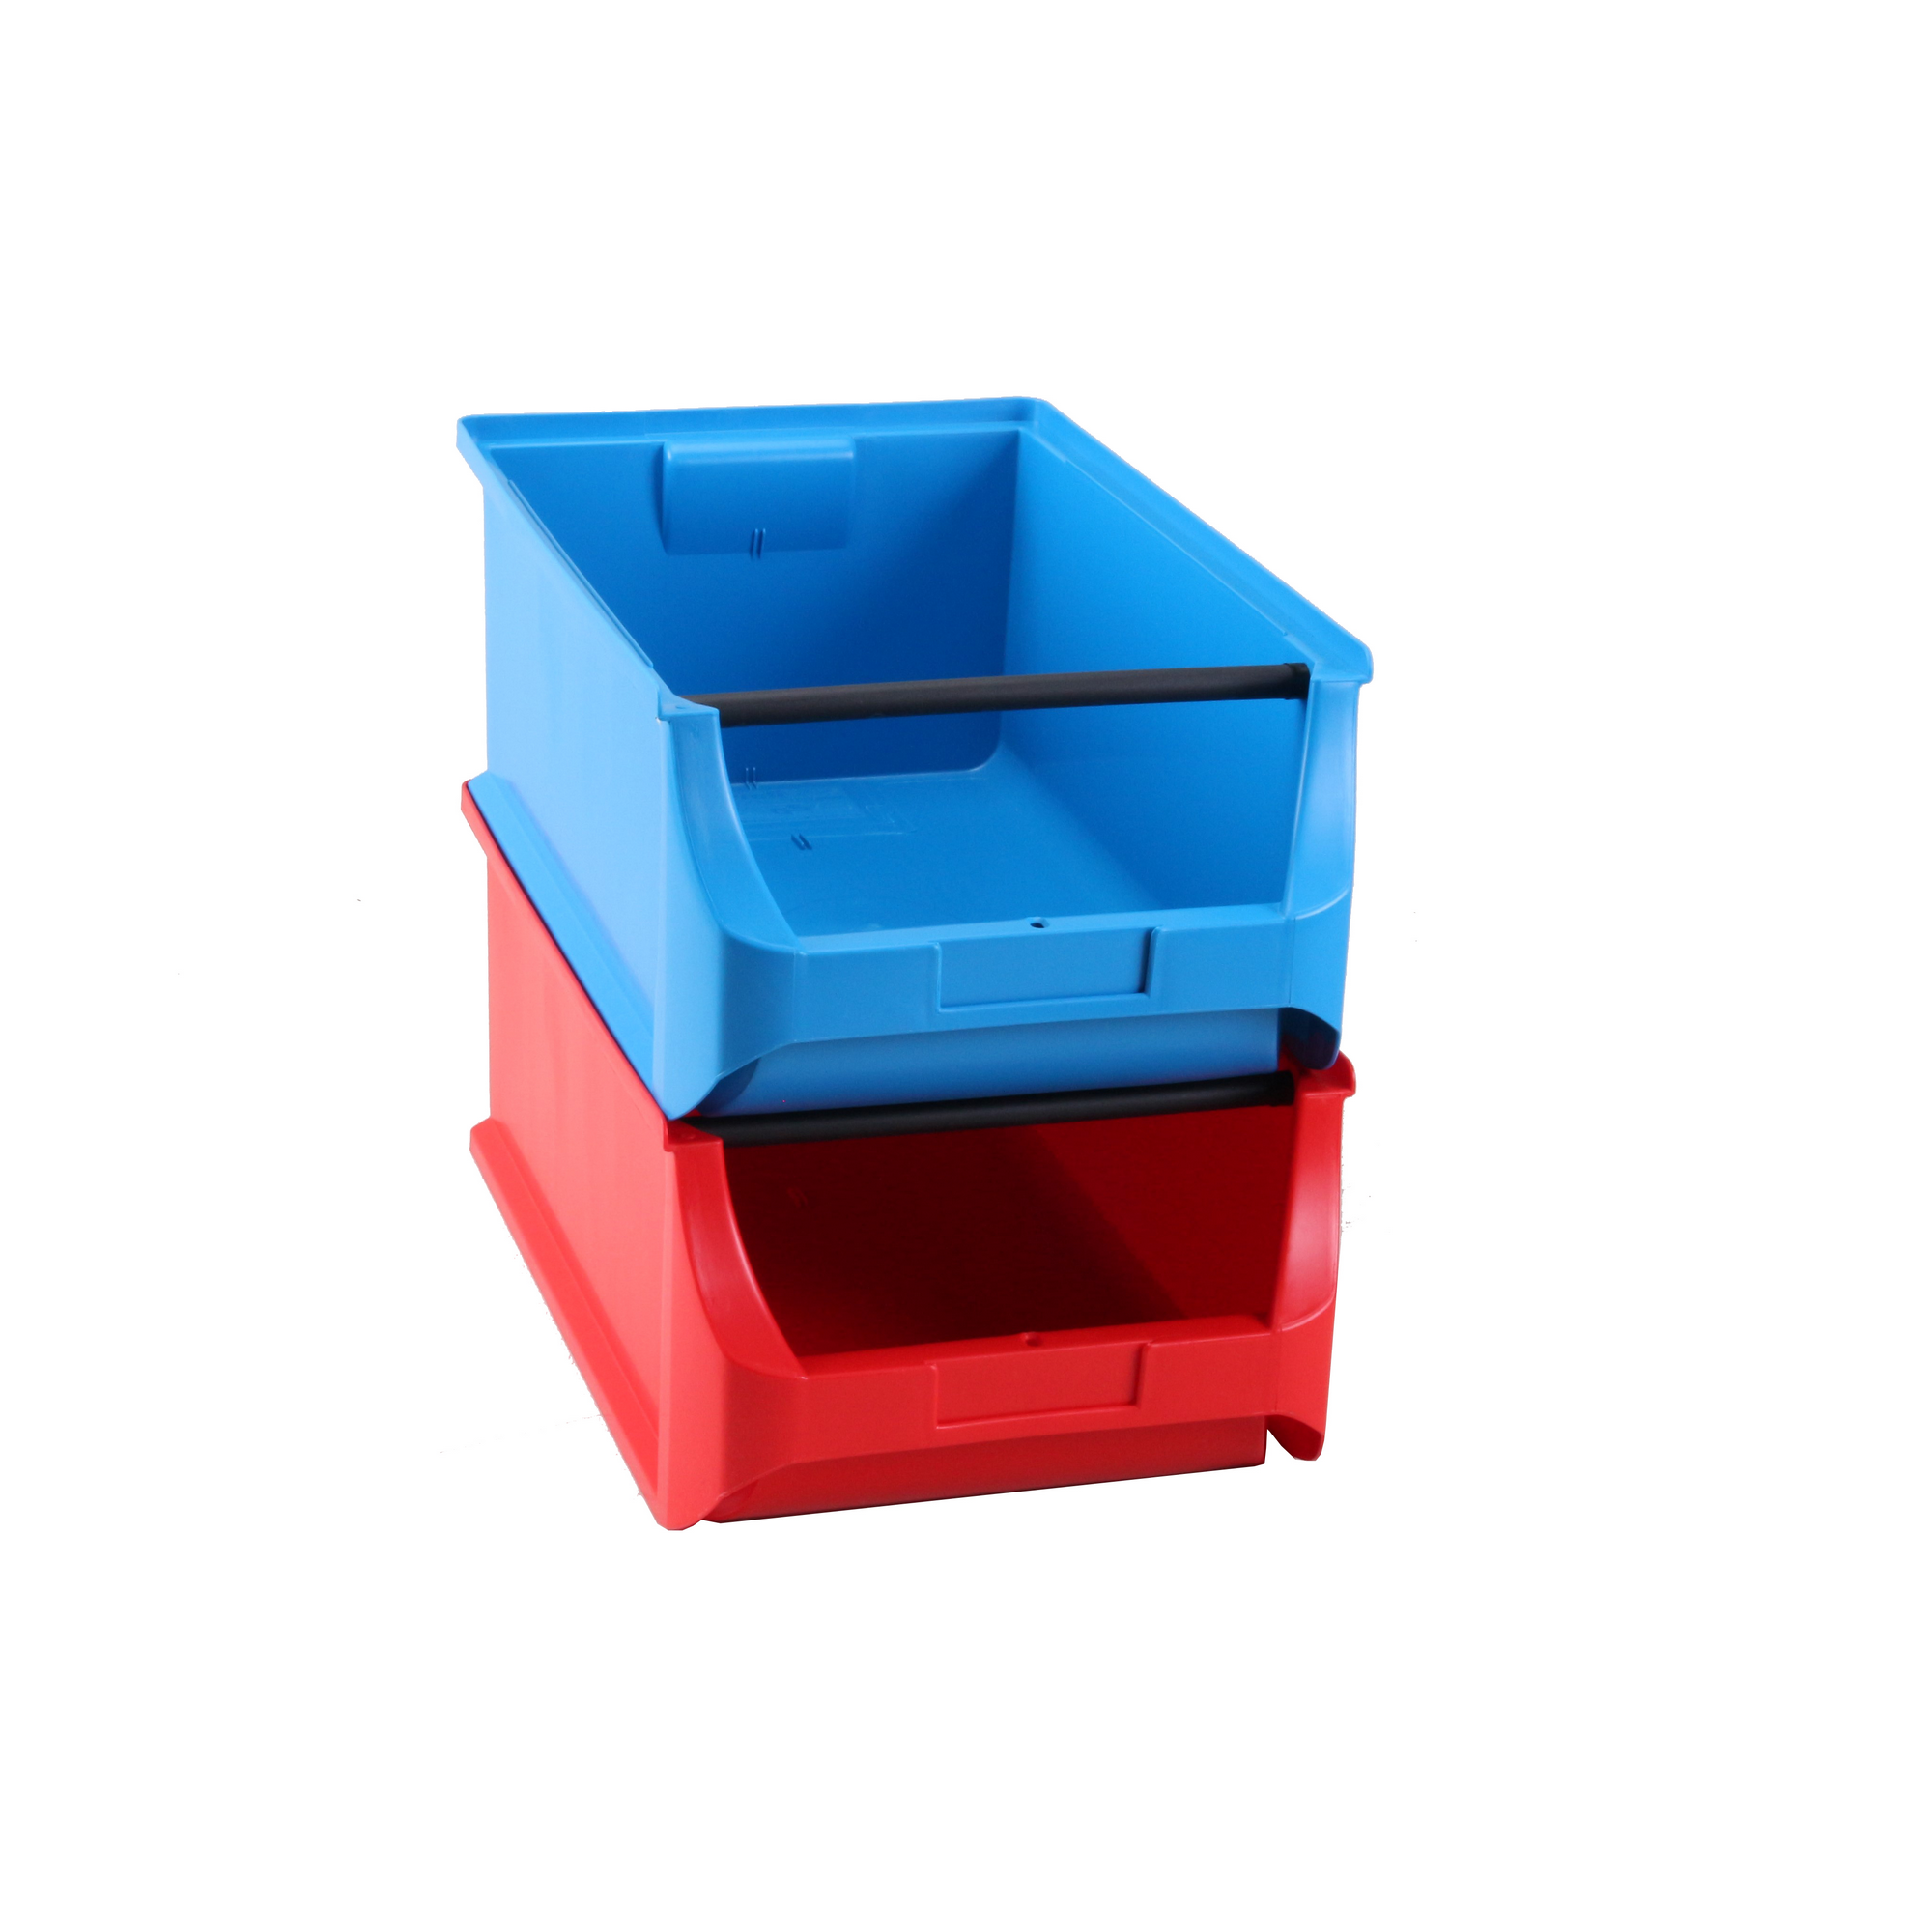 ProfiPlus Stapelsichtbox 'Box 5' blau 50 x 31 x 20 cm + product picture